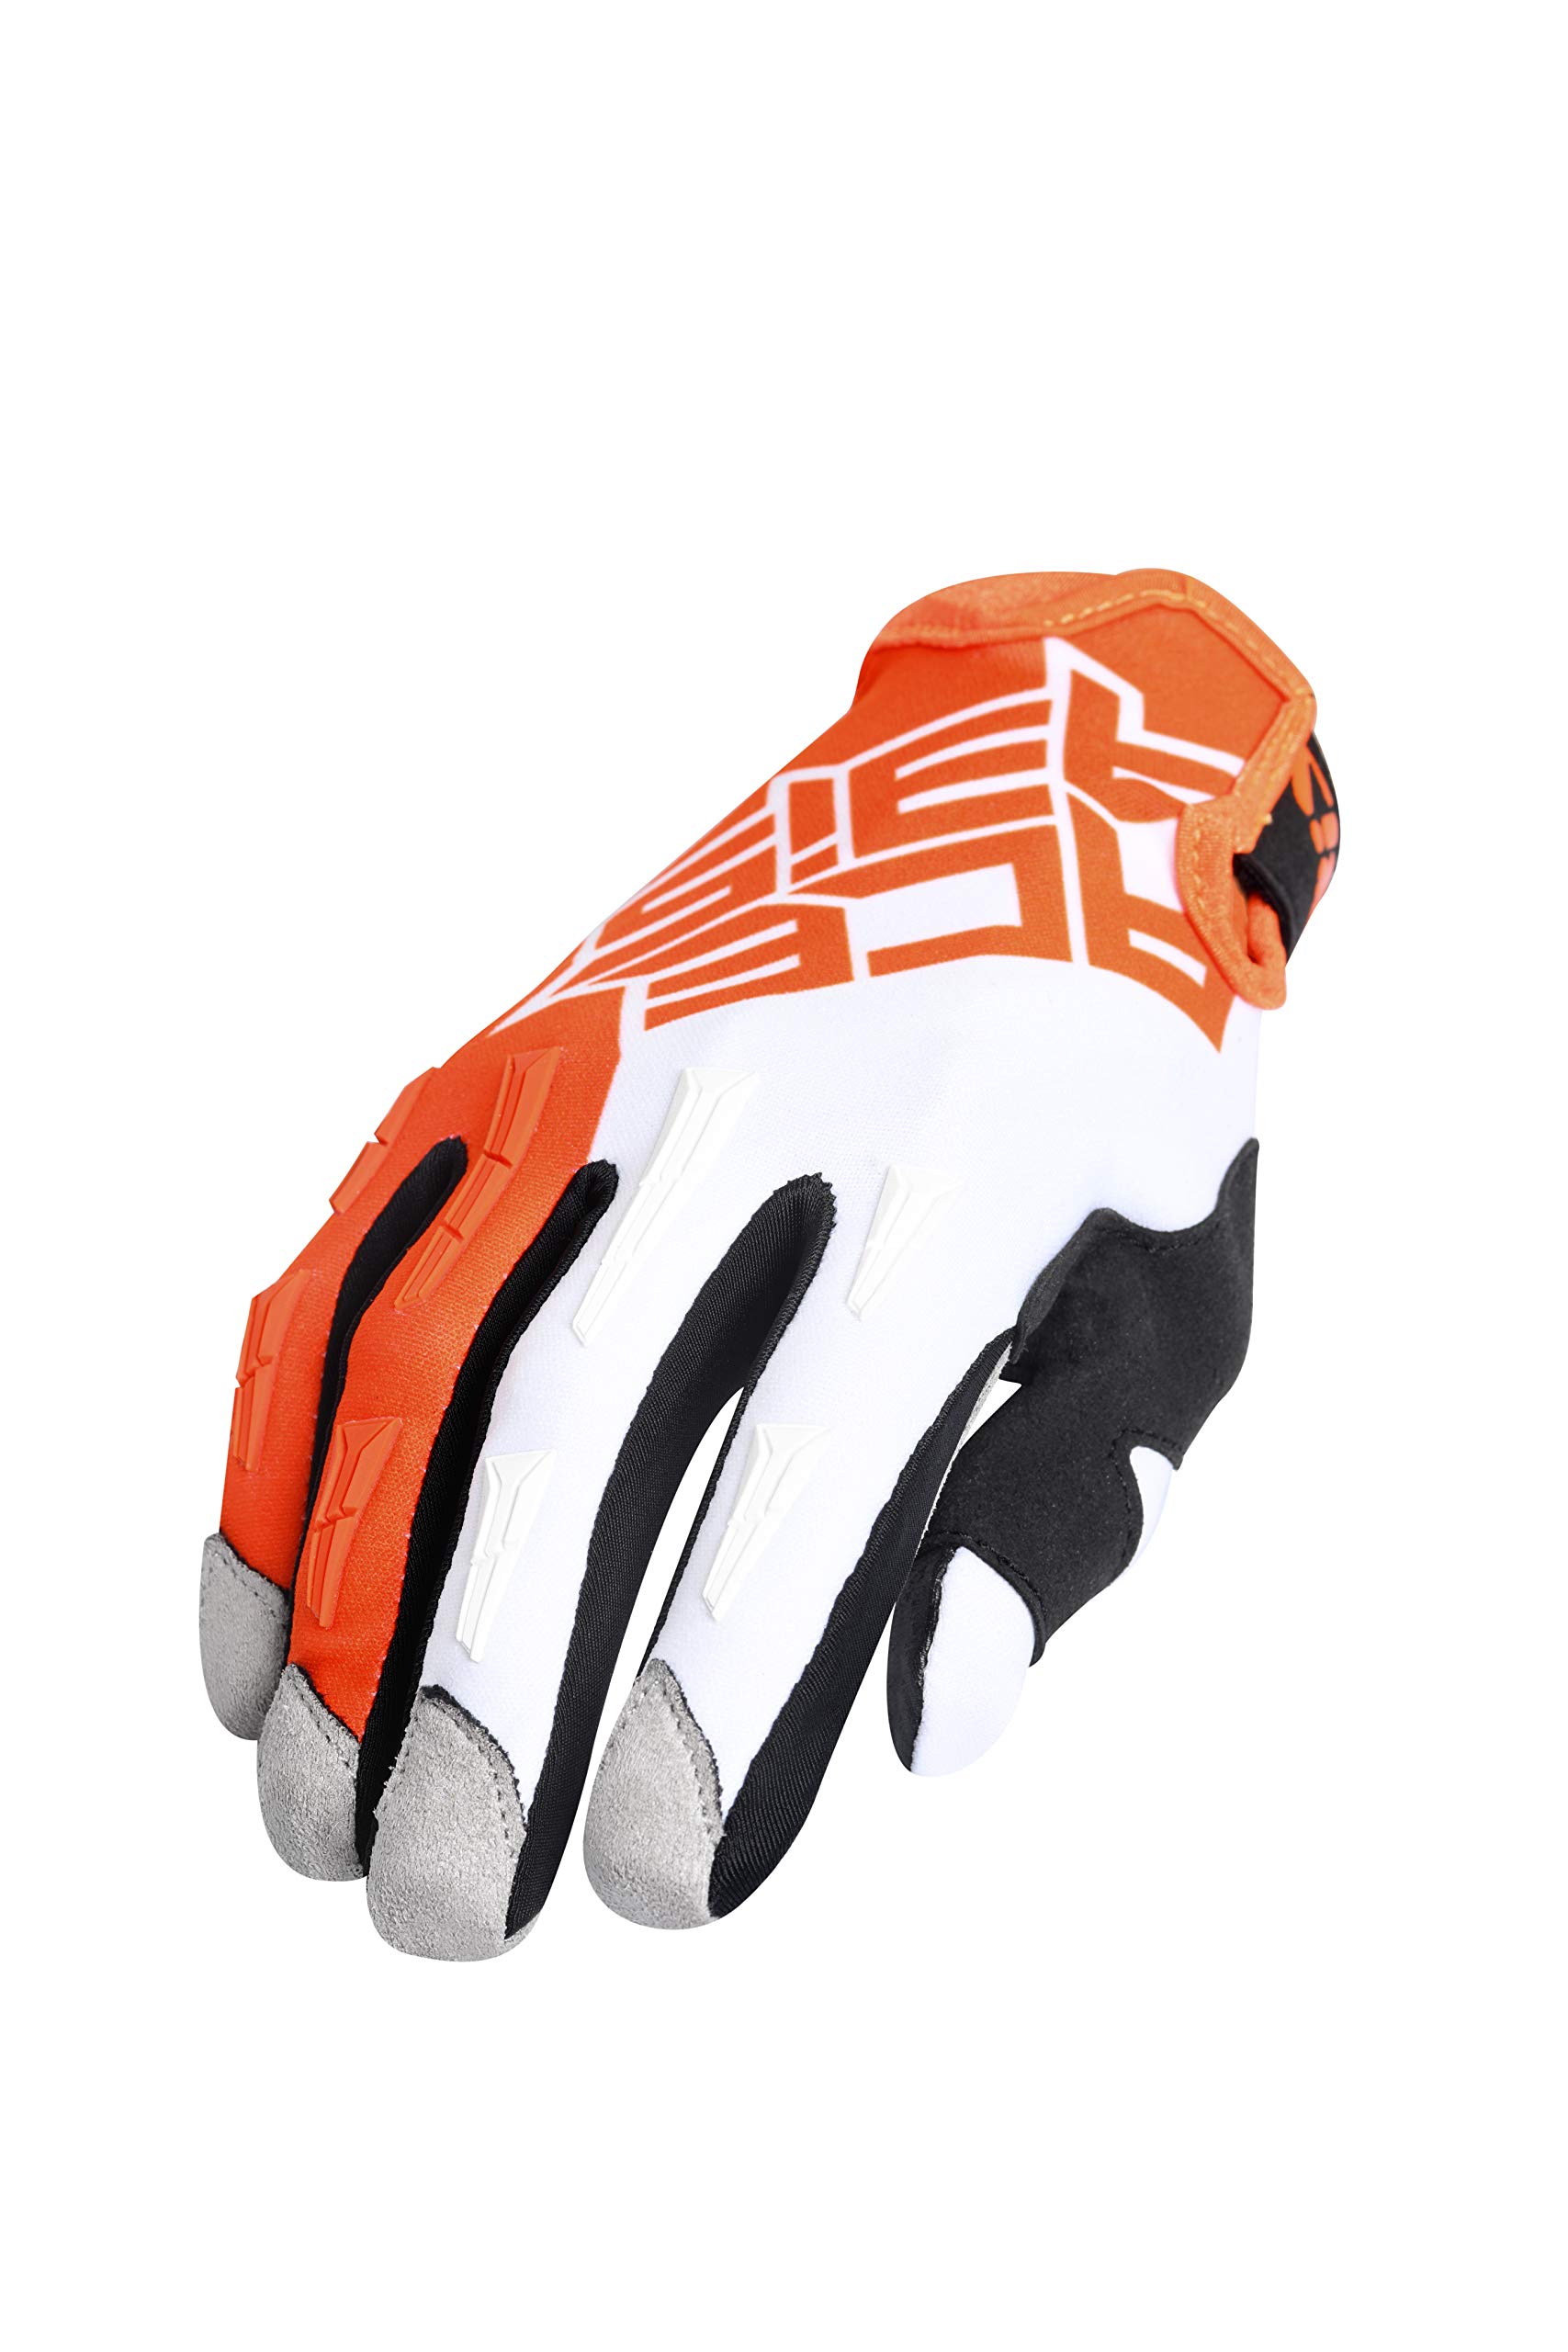 Handschuhe MX X-H orange/weiß M